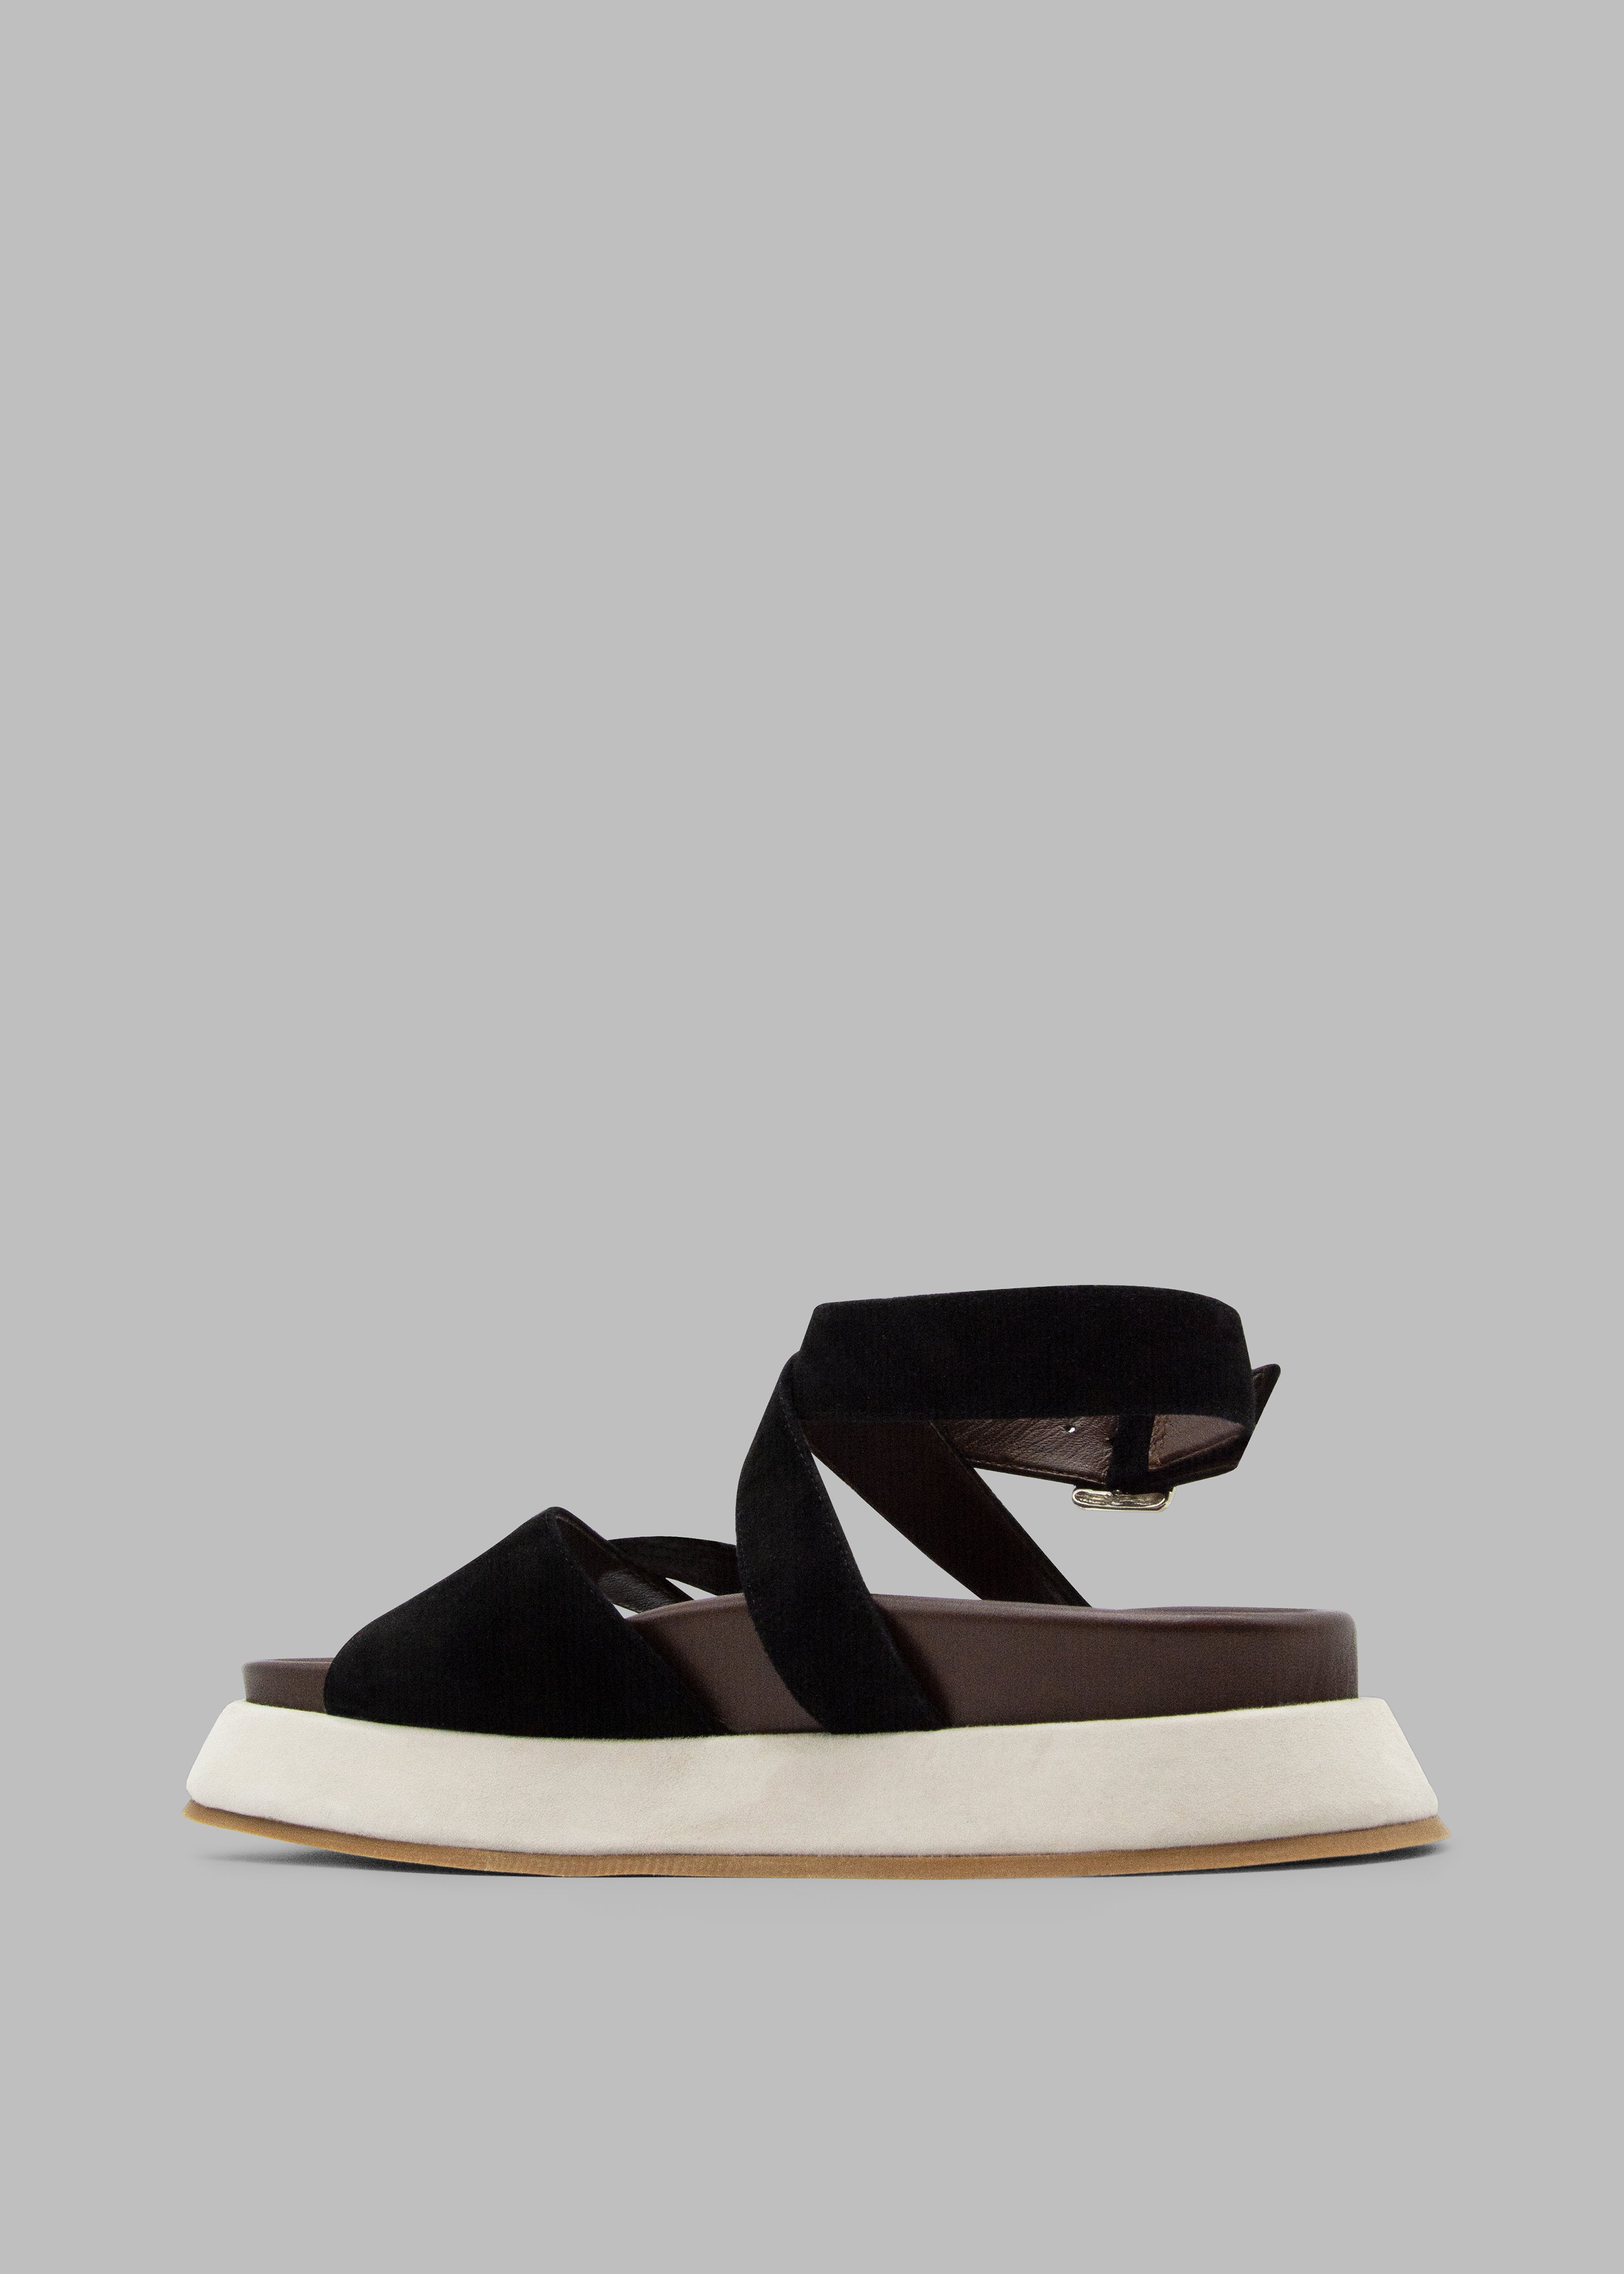 Gia Borghini Rosie 41 Flat Sandals - Black/Chocolate/Beige - 2